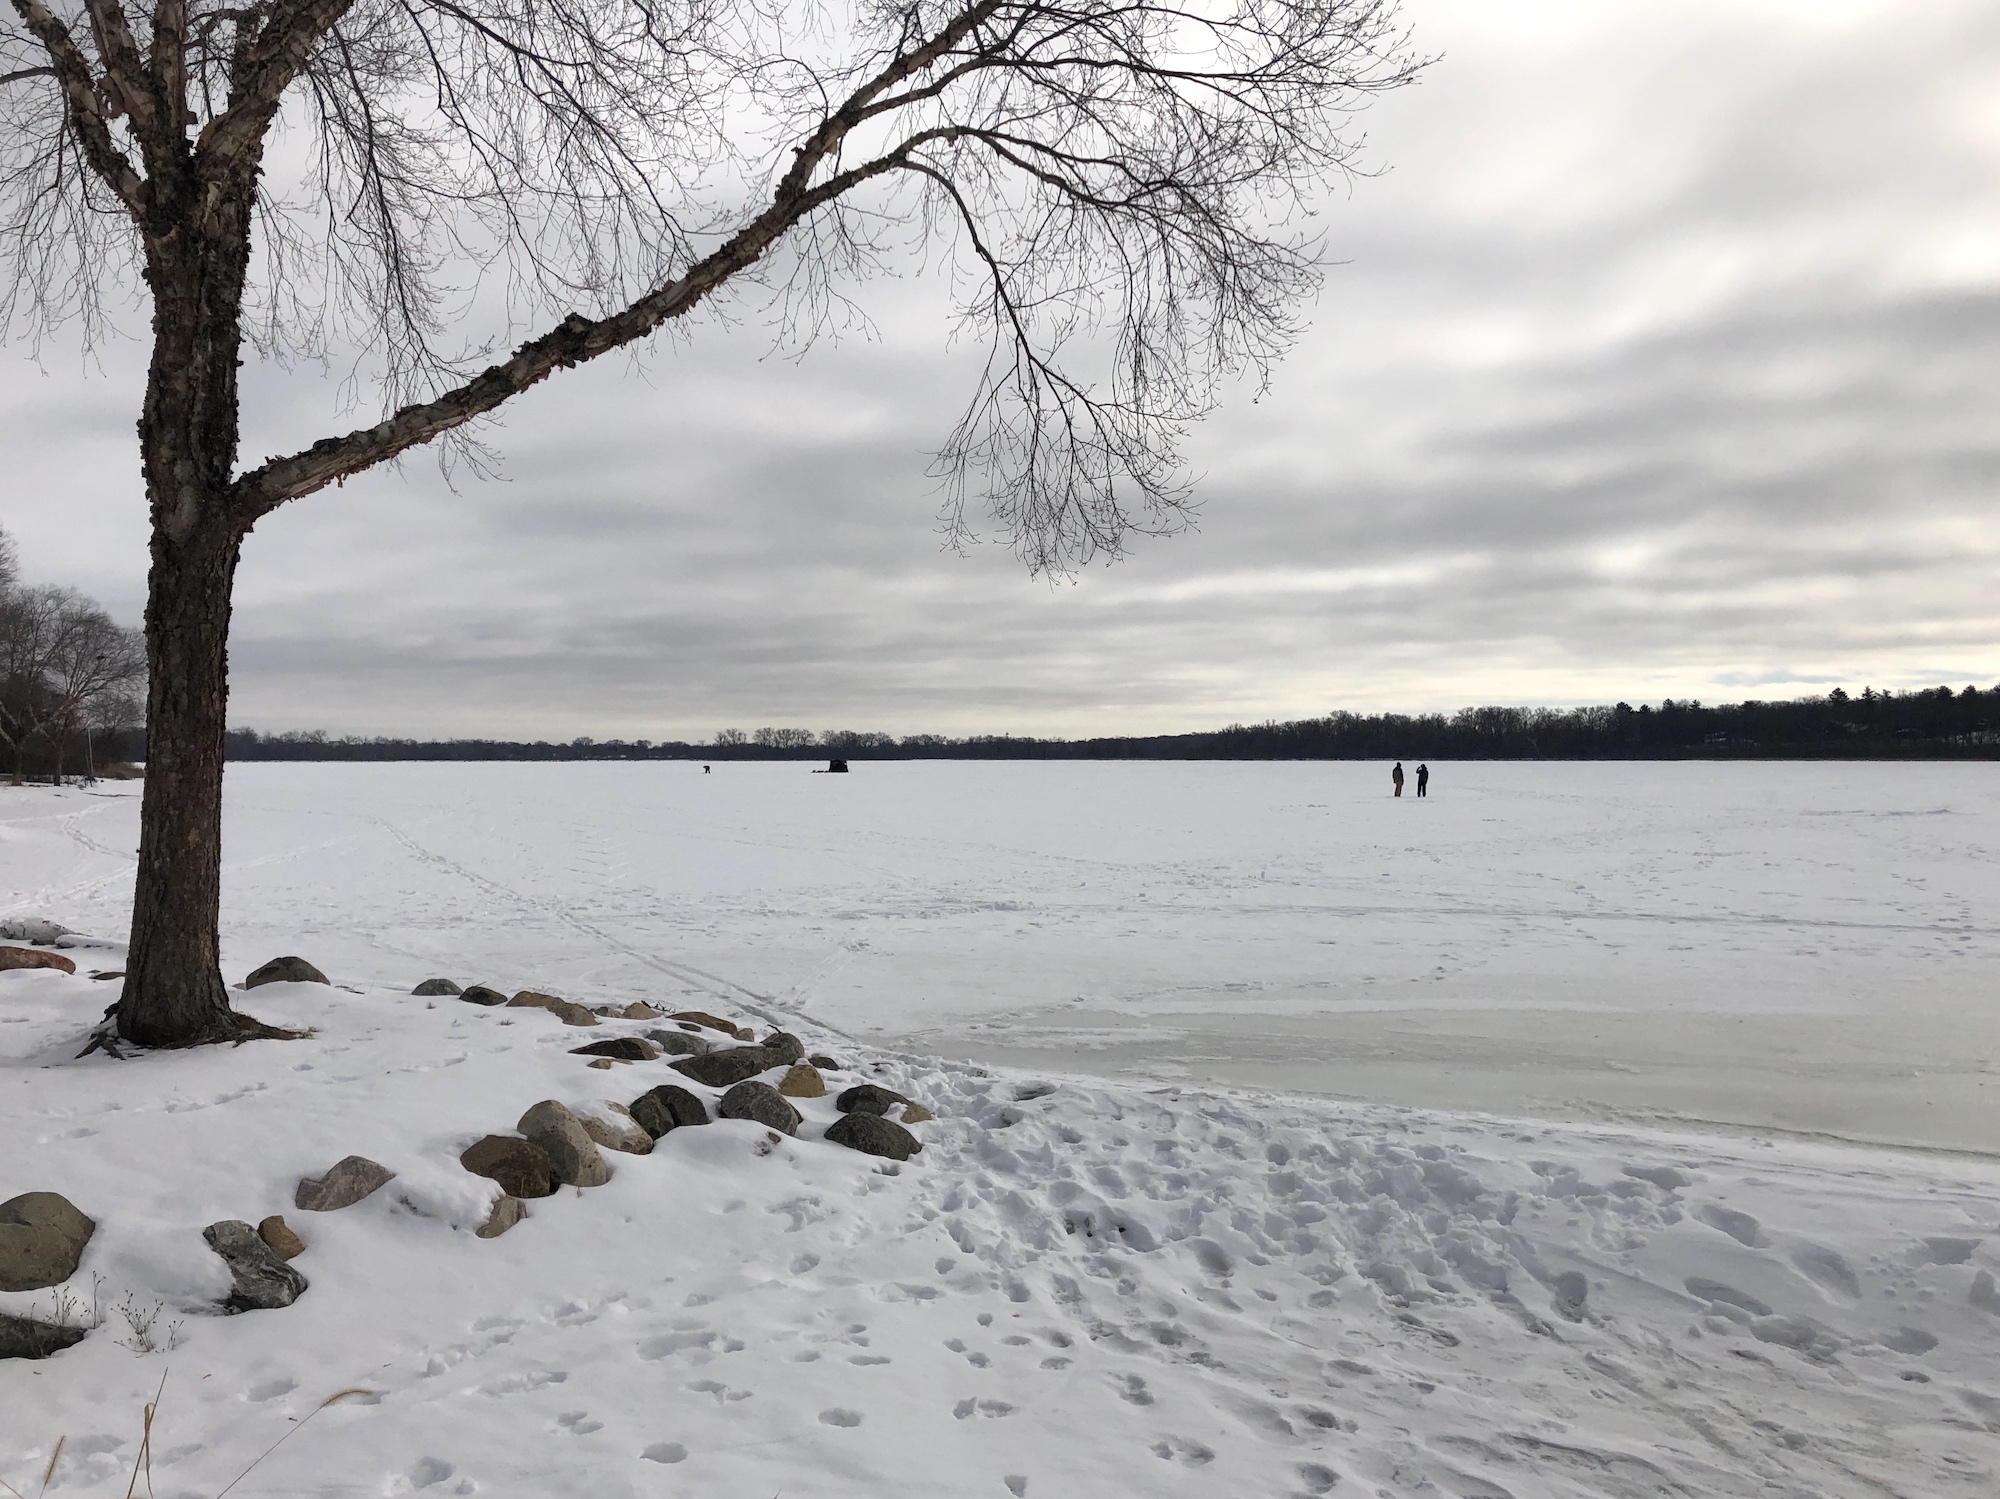 Lake Wingra on February 16, 2019.